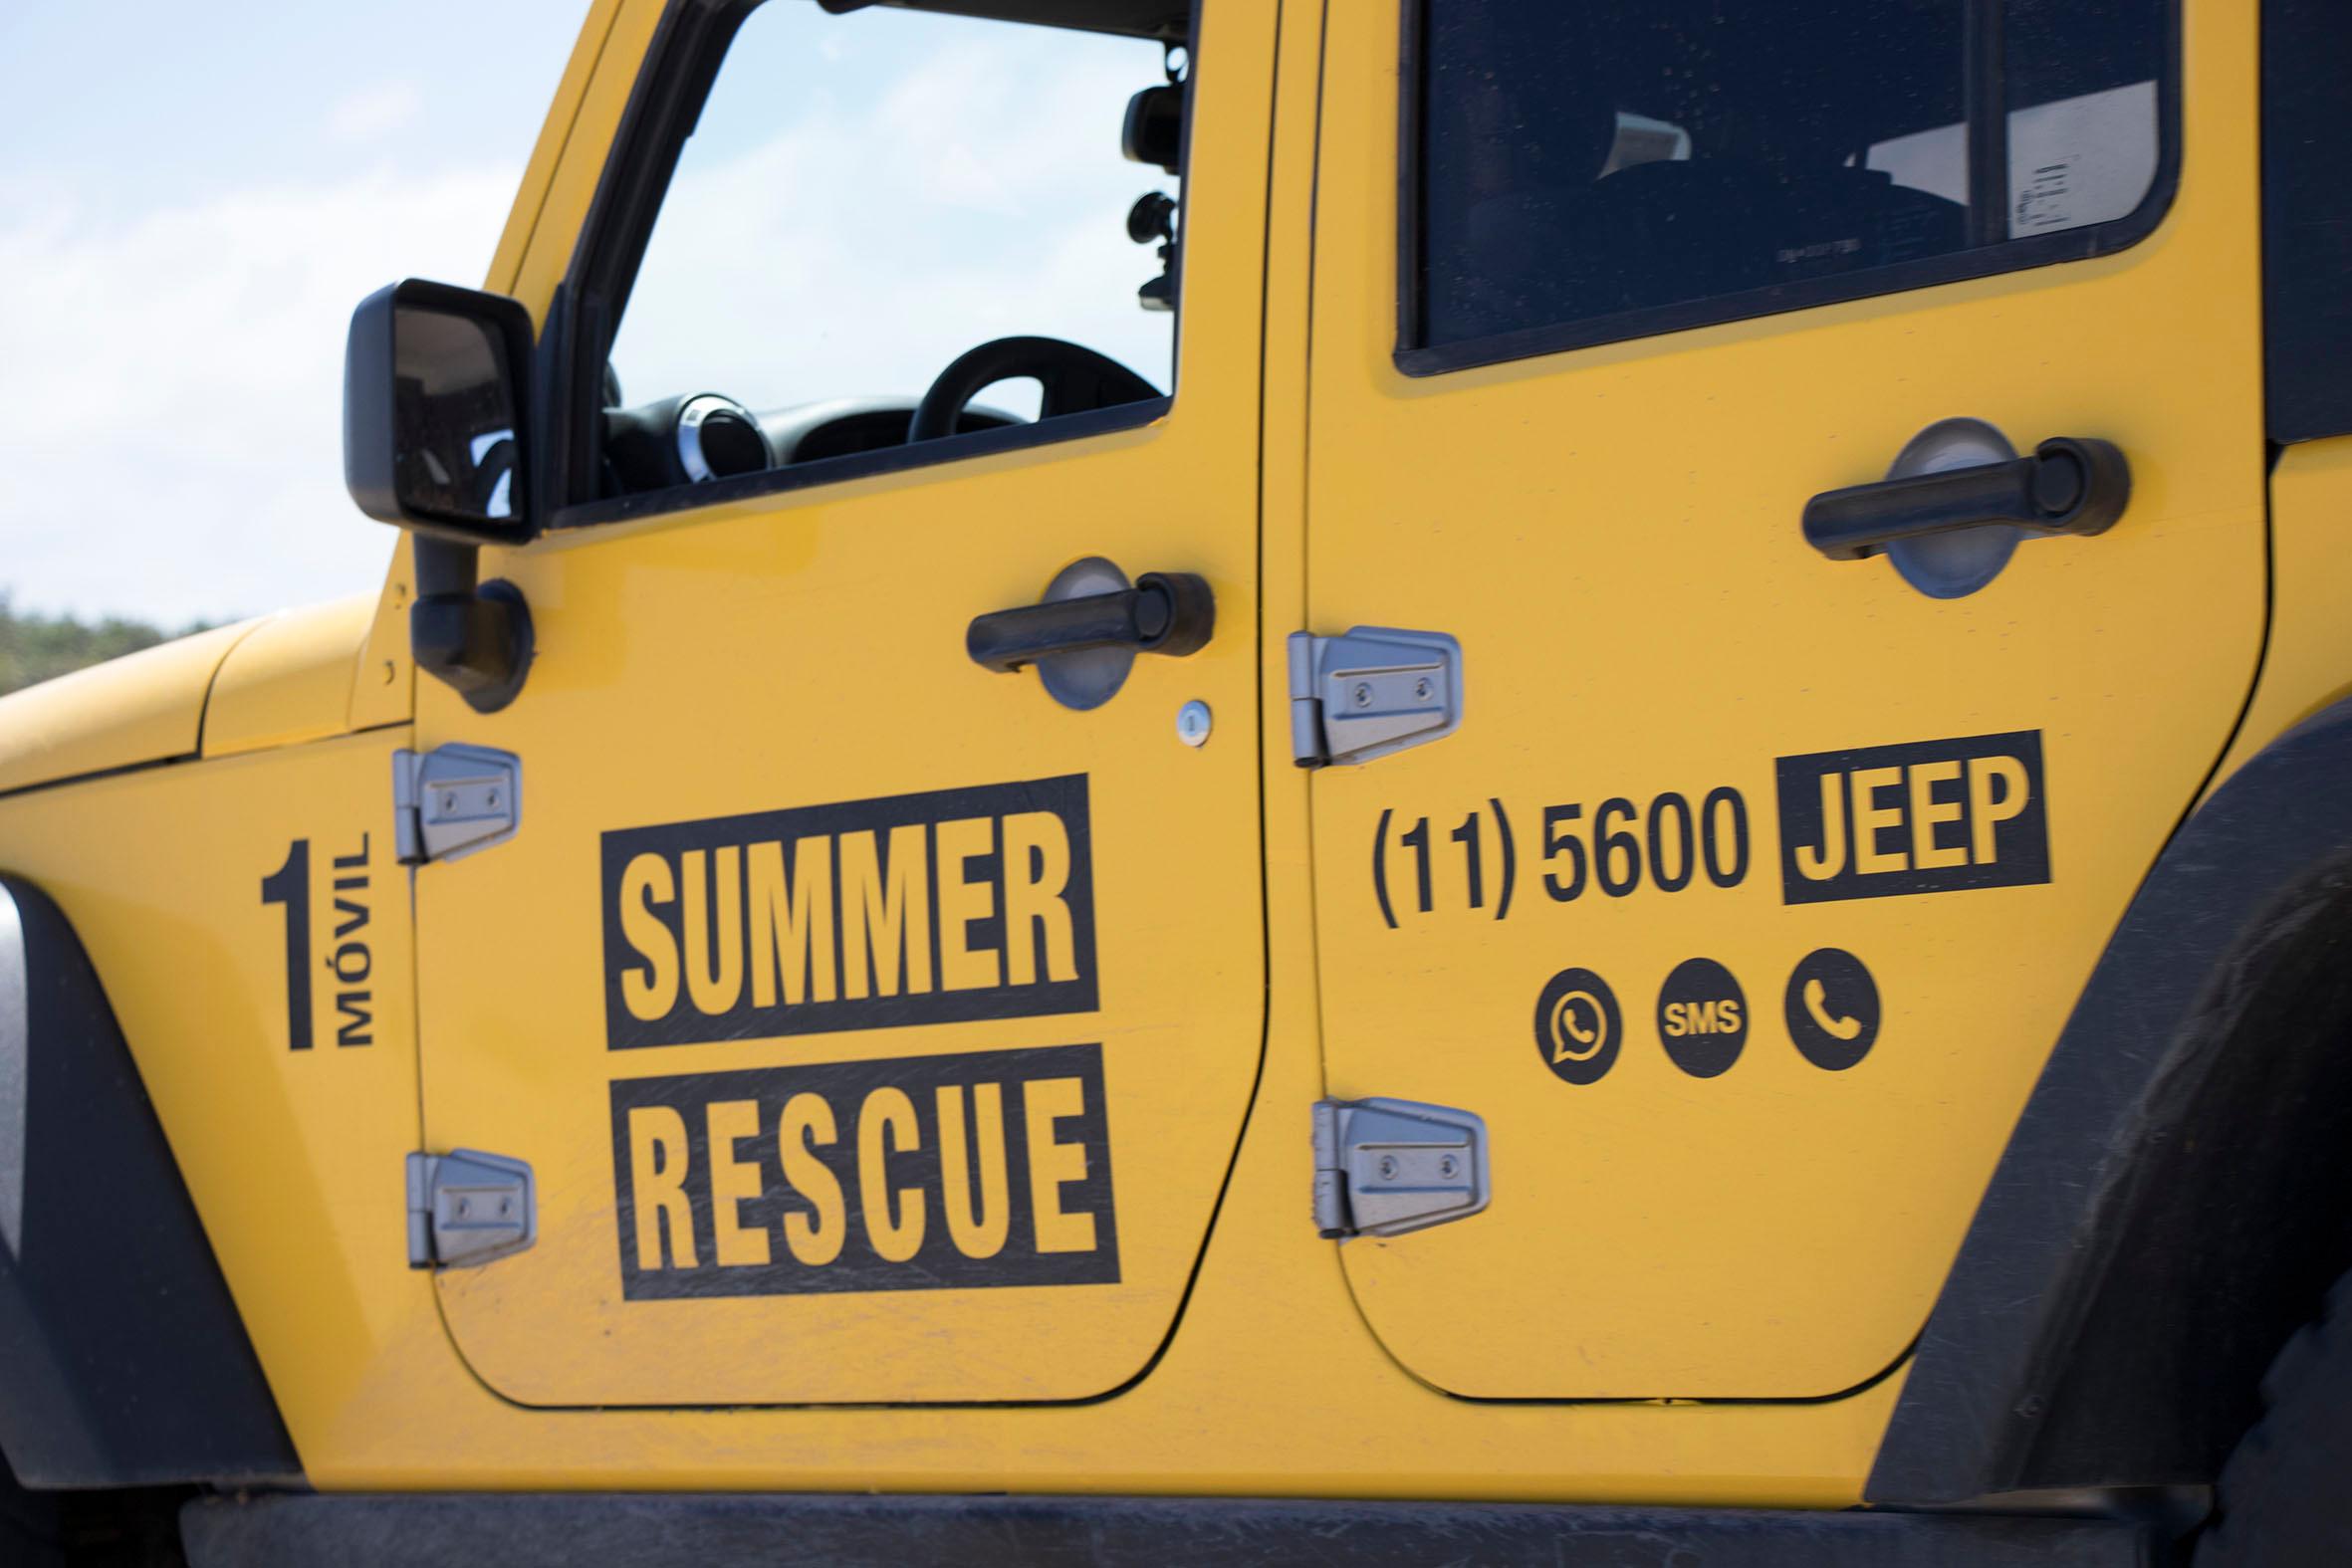 007-jeep-rescue.jpg,117-jeep-rescue.jpg,106-jeep-rescue.jpg,115-jeep-rescue.jpg,022-jeep-rescue.jpg,jeep-rescue.jpg,060-jeep-rescue.jpg,030-jeep-rescu